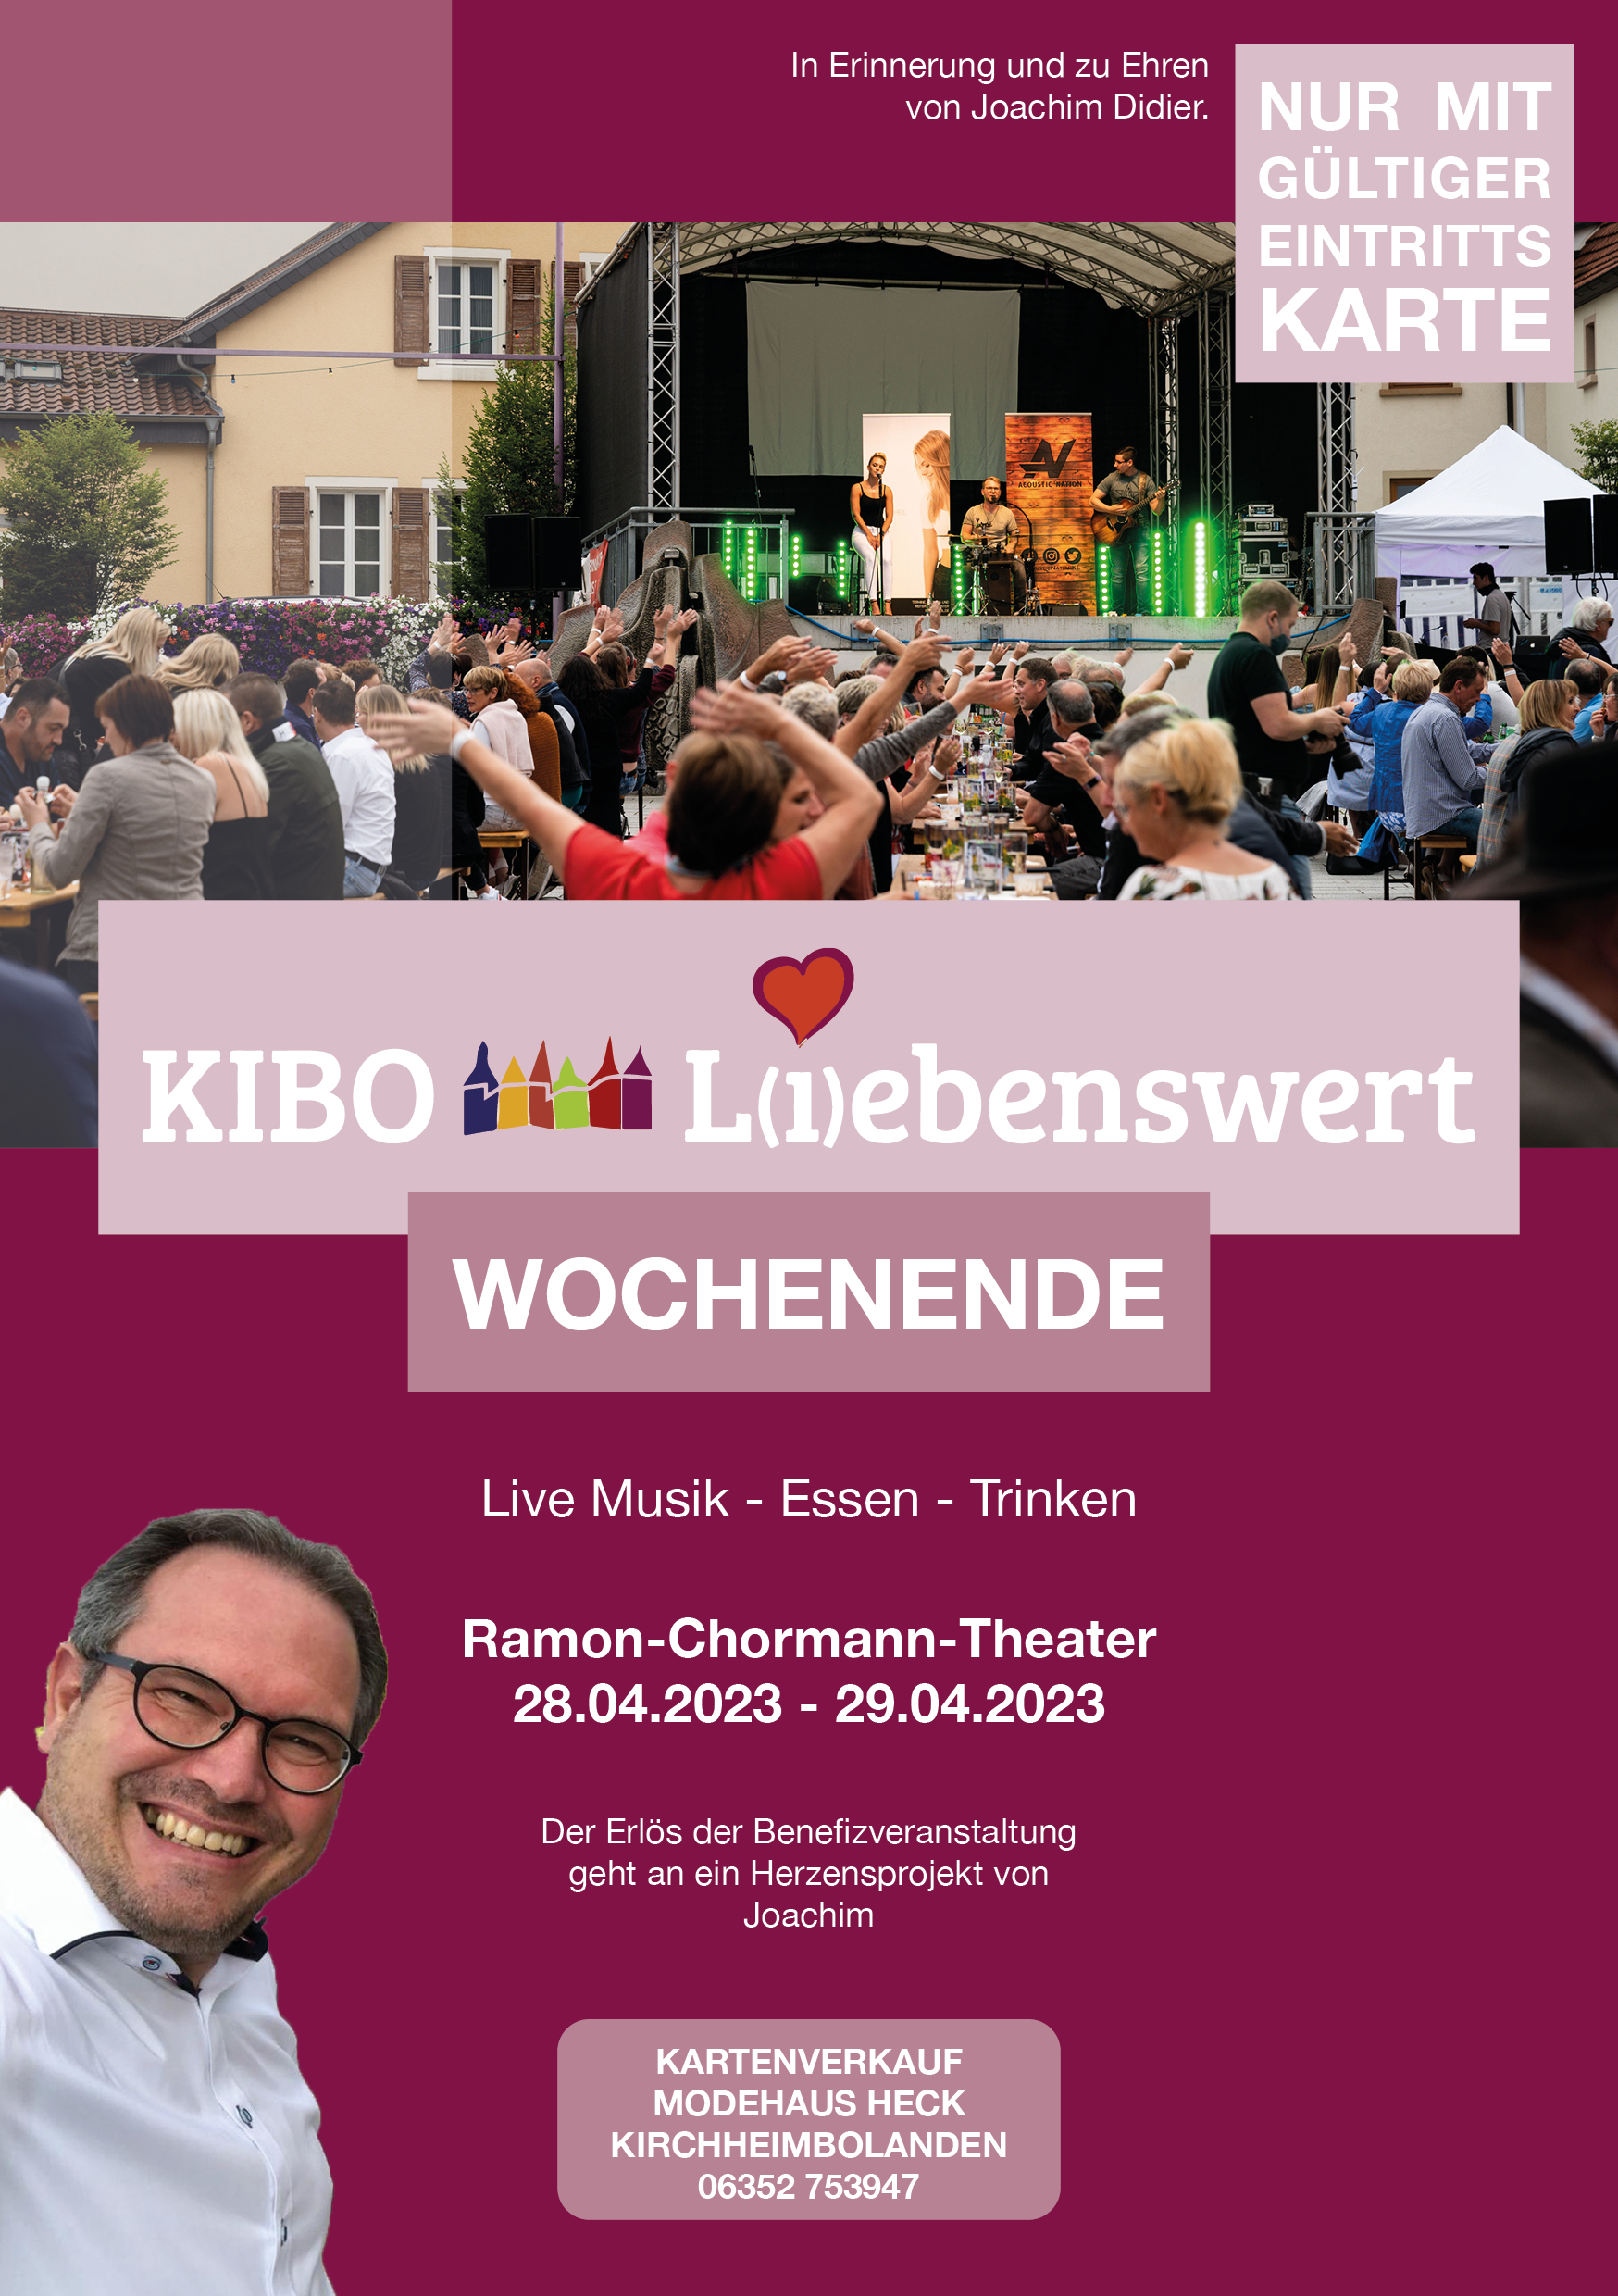 KIBO-Liebenswert Wochenende am 28. und 29.04.2023 im Ramon Chormann Theater in Kirchheimbolanden präsentiert von proKIBO e.V. Flyer vorn